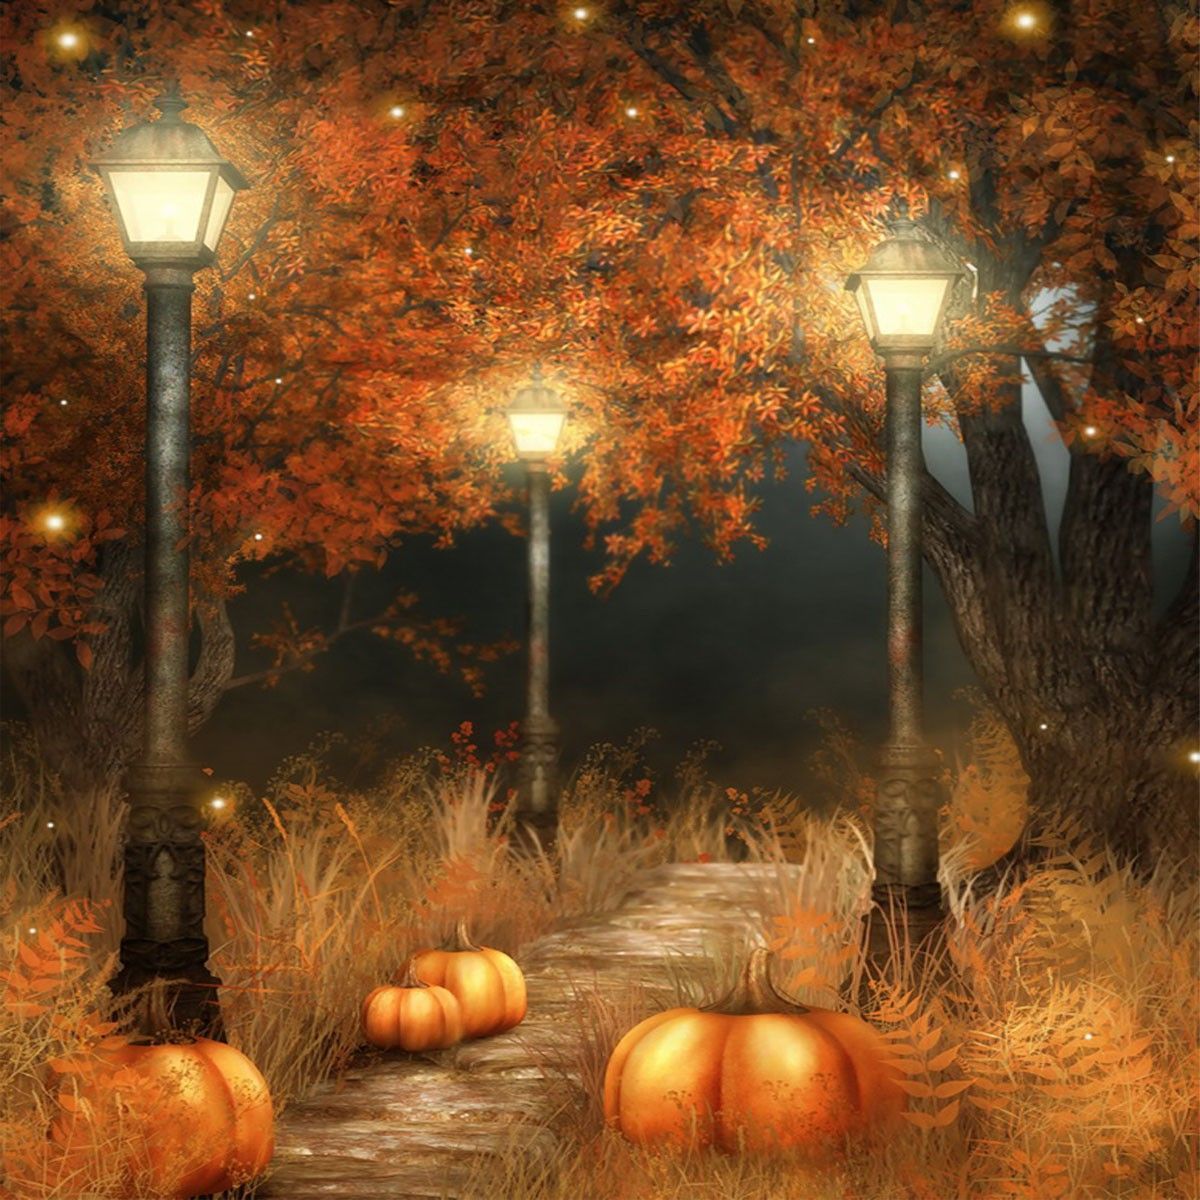 5x7ft-Halloween-Pumpkin-Lamp-Photography-Backdrop-Studio-Prop-Background-1182130